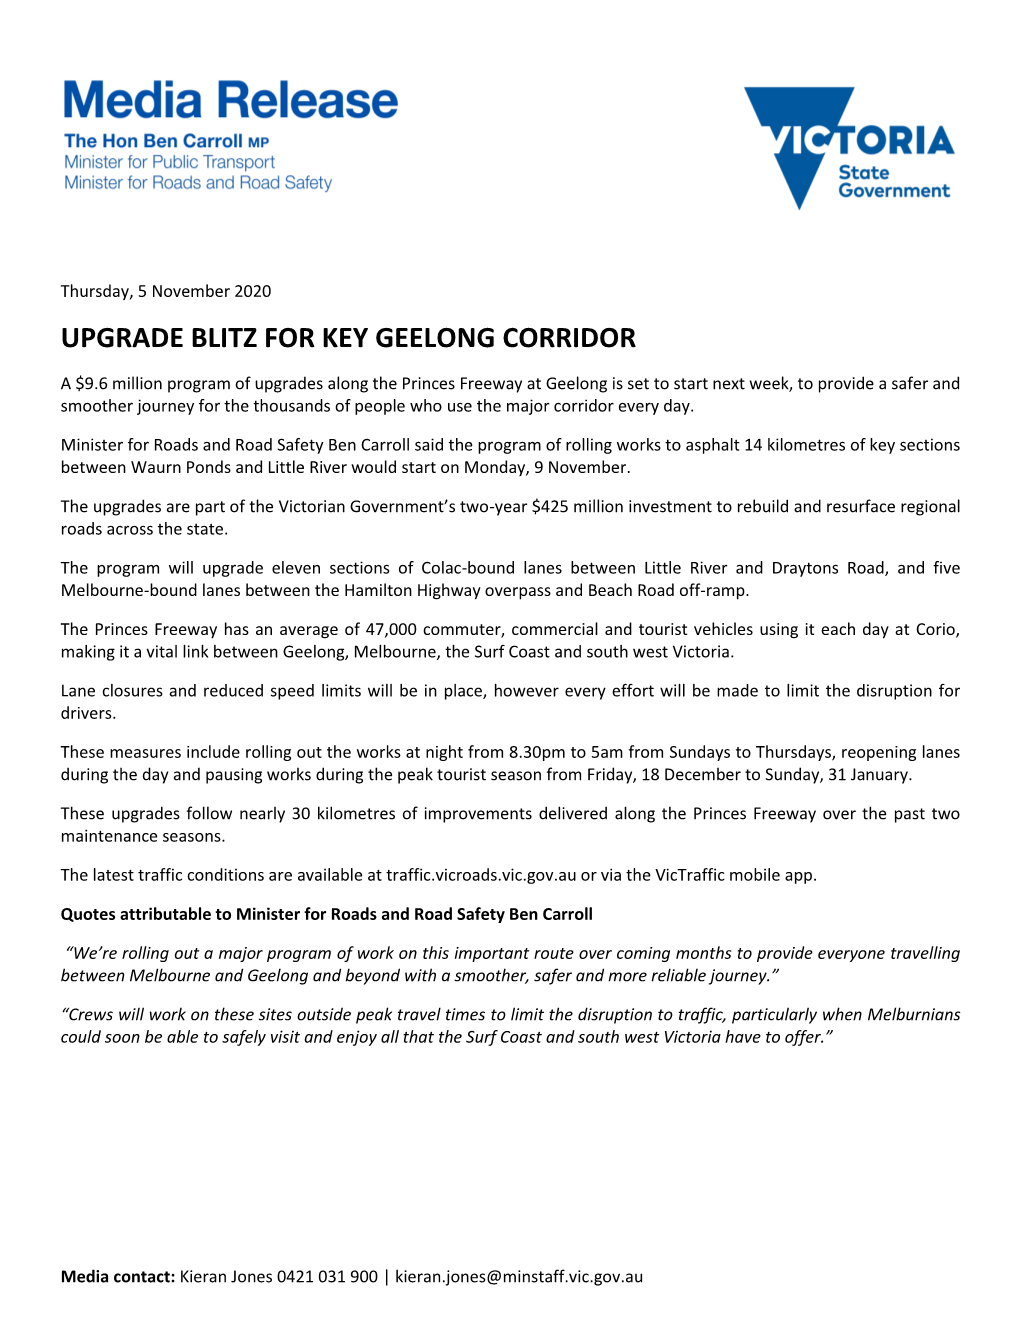 Upgrade Blitz for Key Geelong Corridor